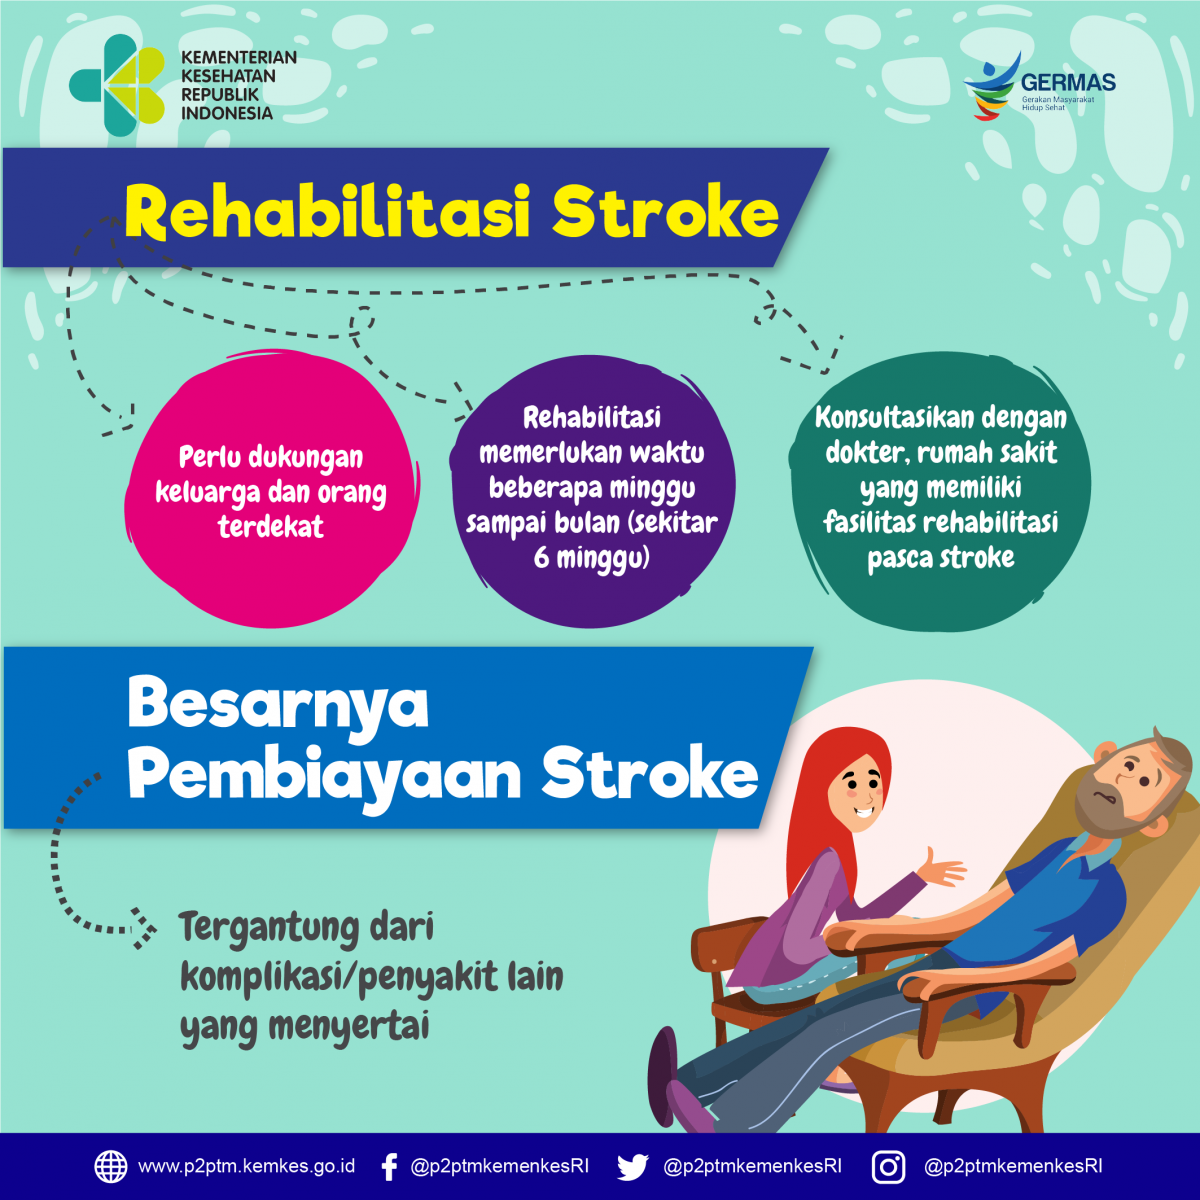 Bagaimana rehabilitasi stroke dan besar pembiayaan stroke ?